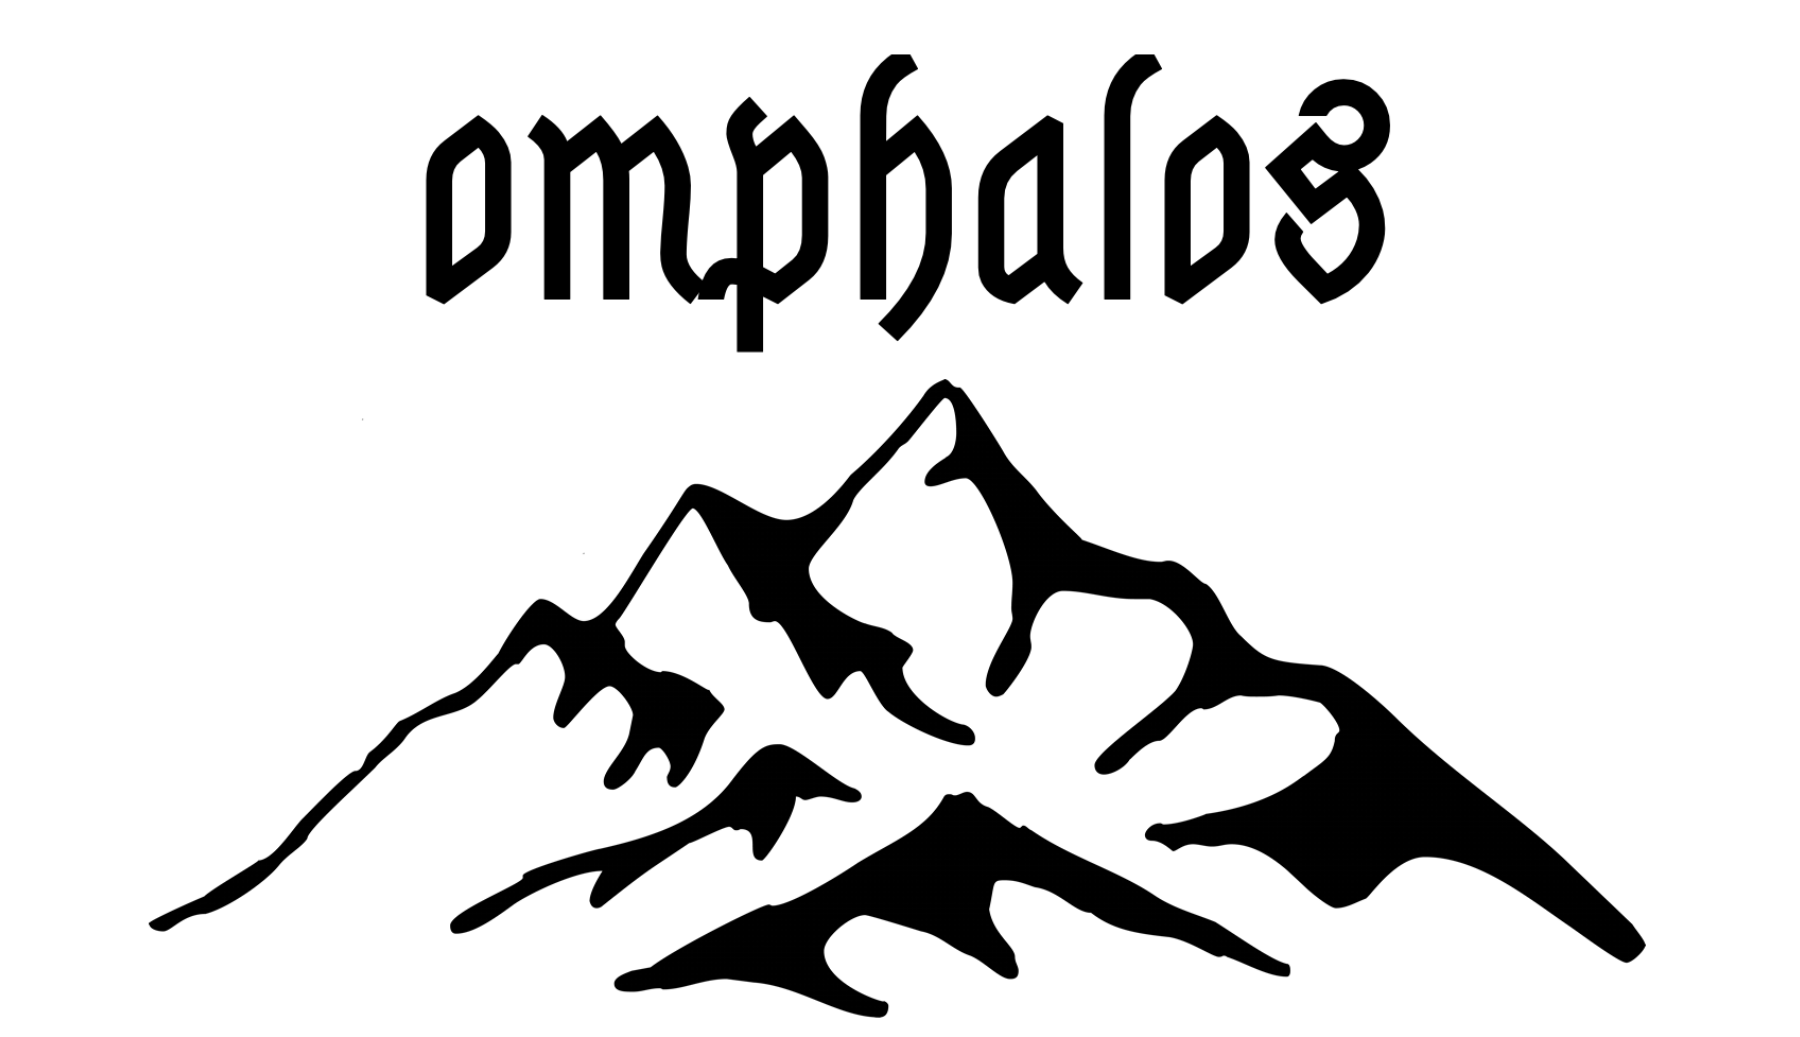 OMPHALOS